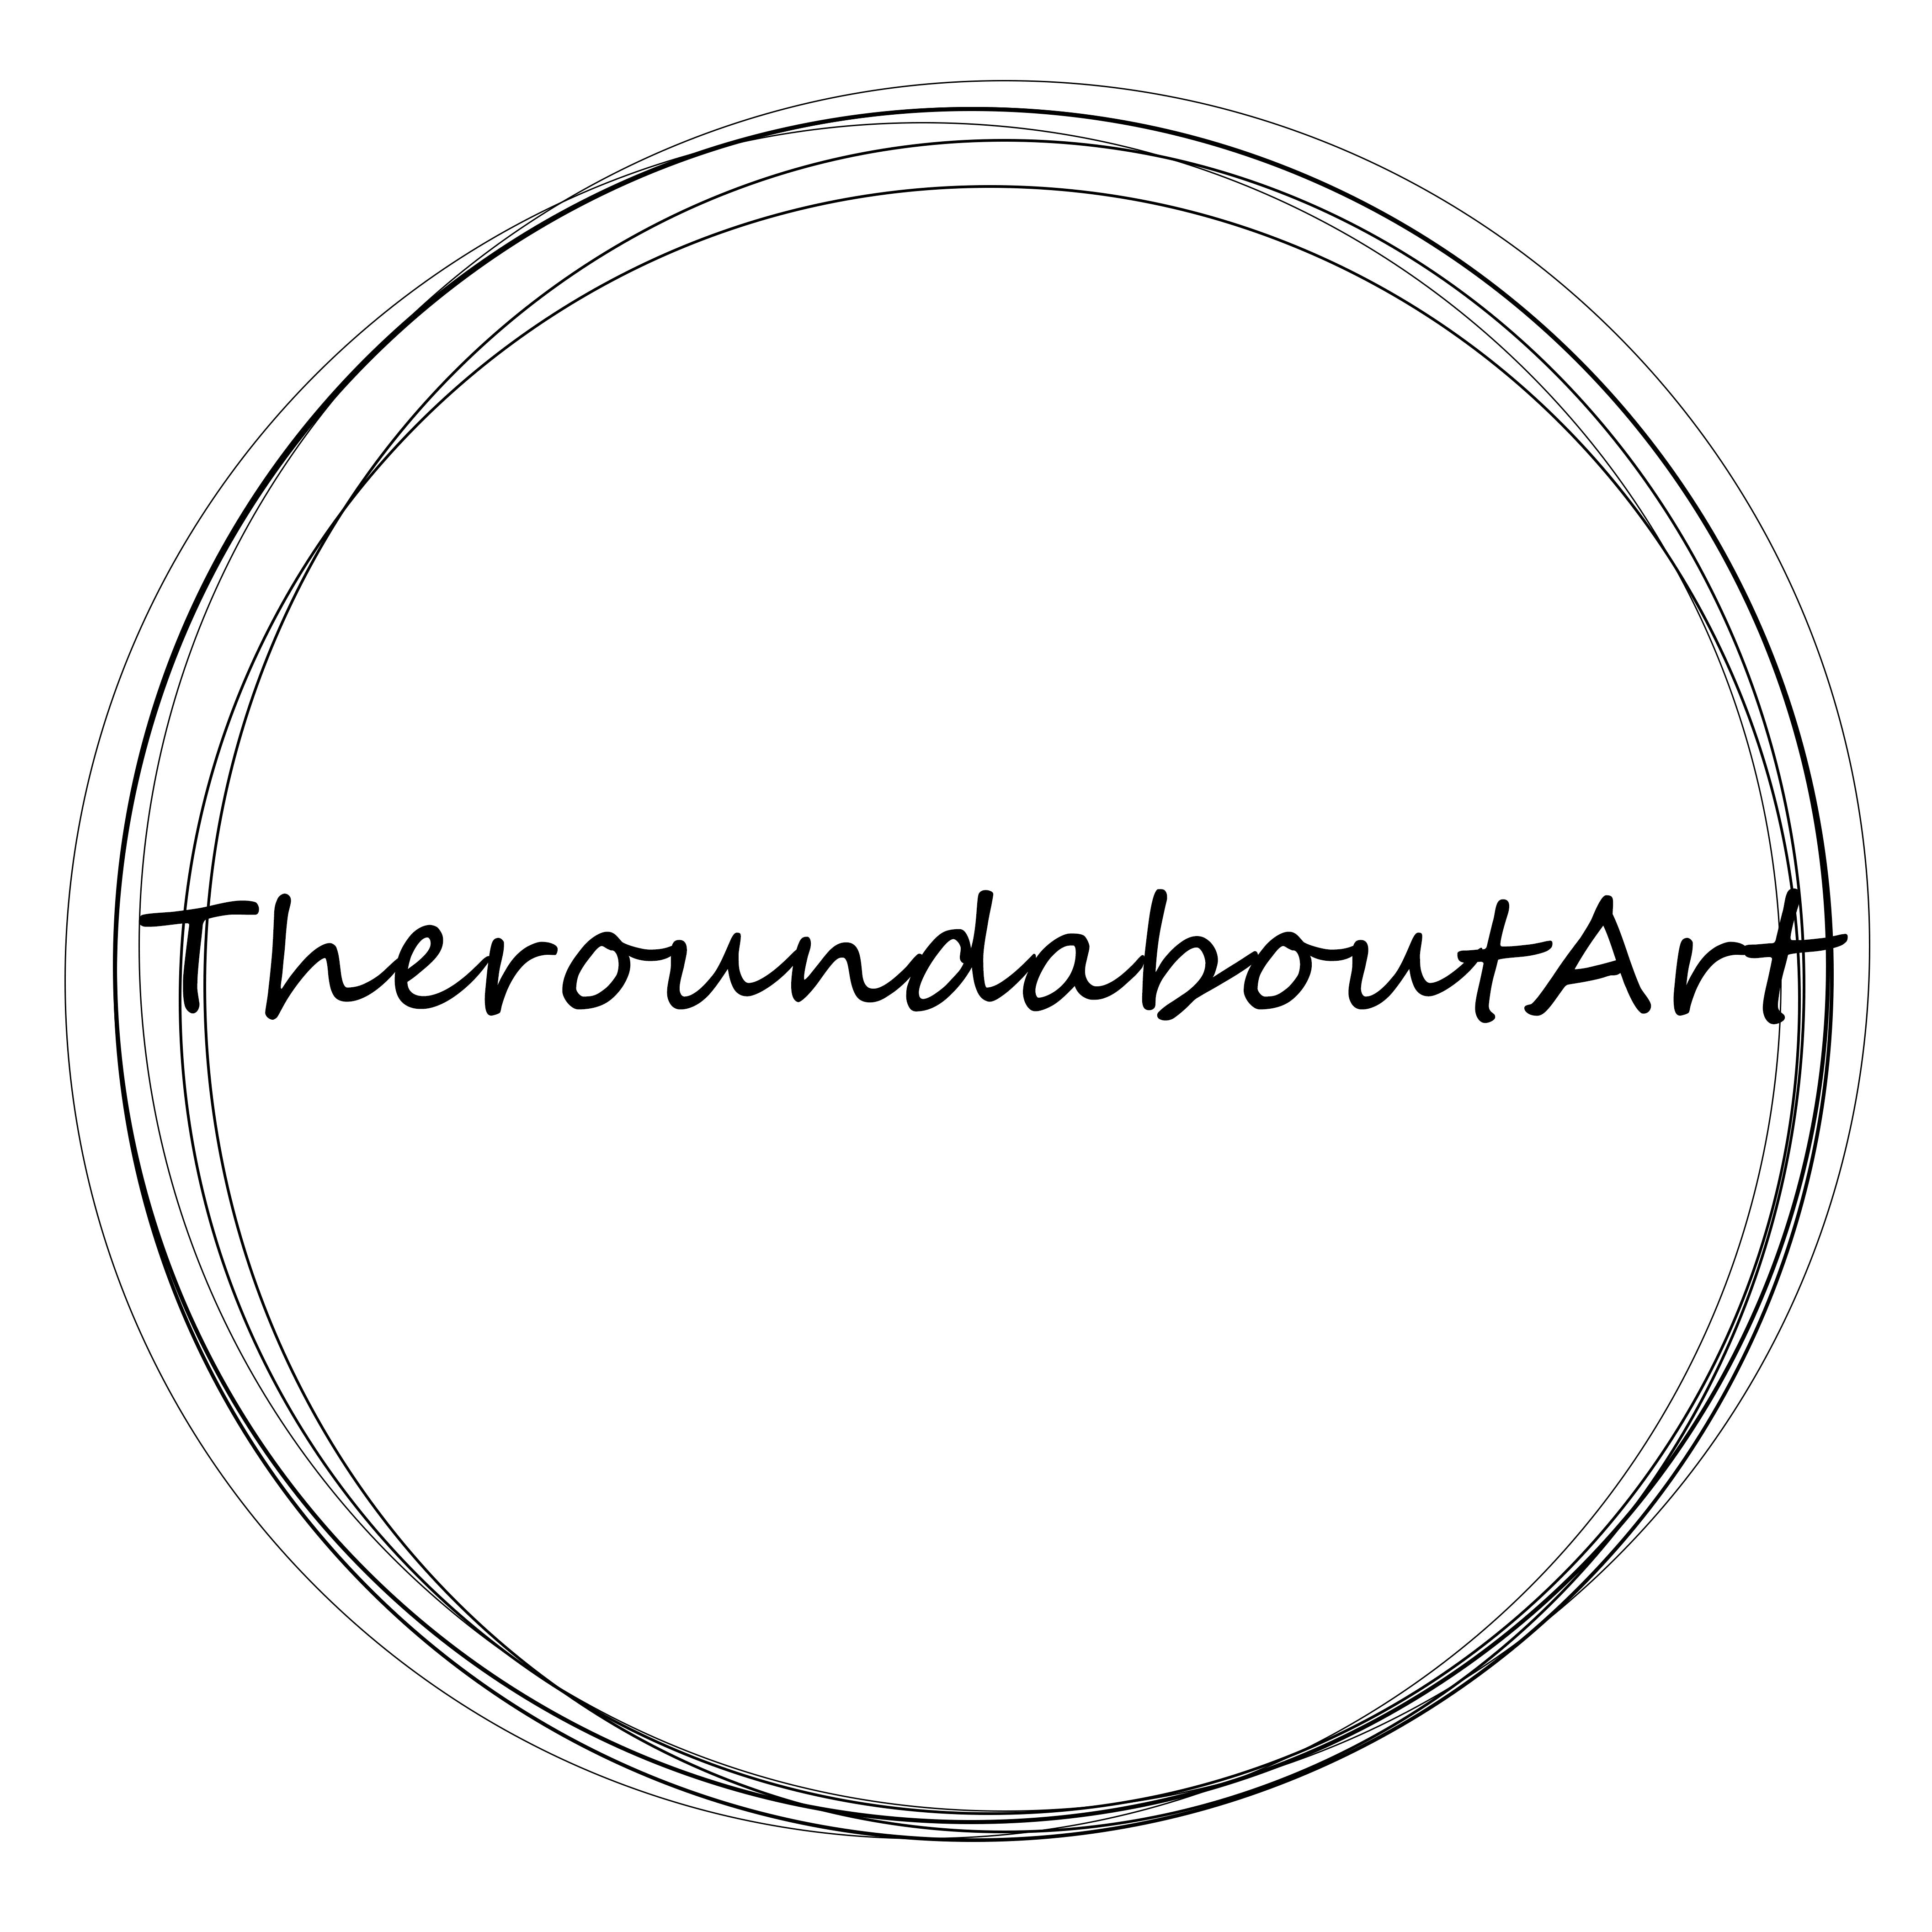 Theroundabout Art